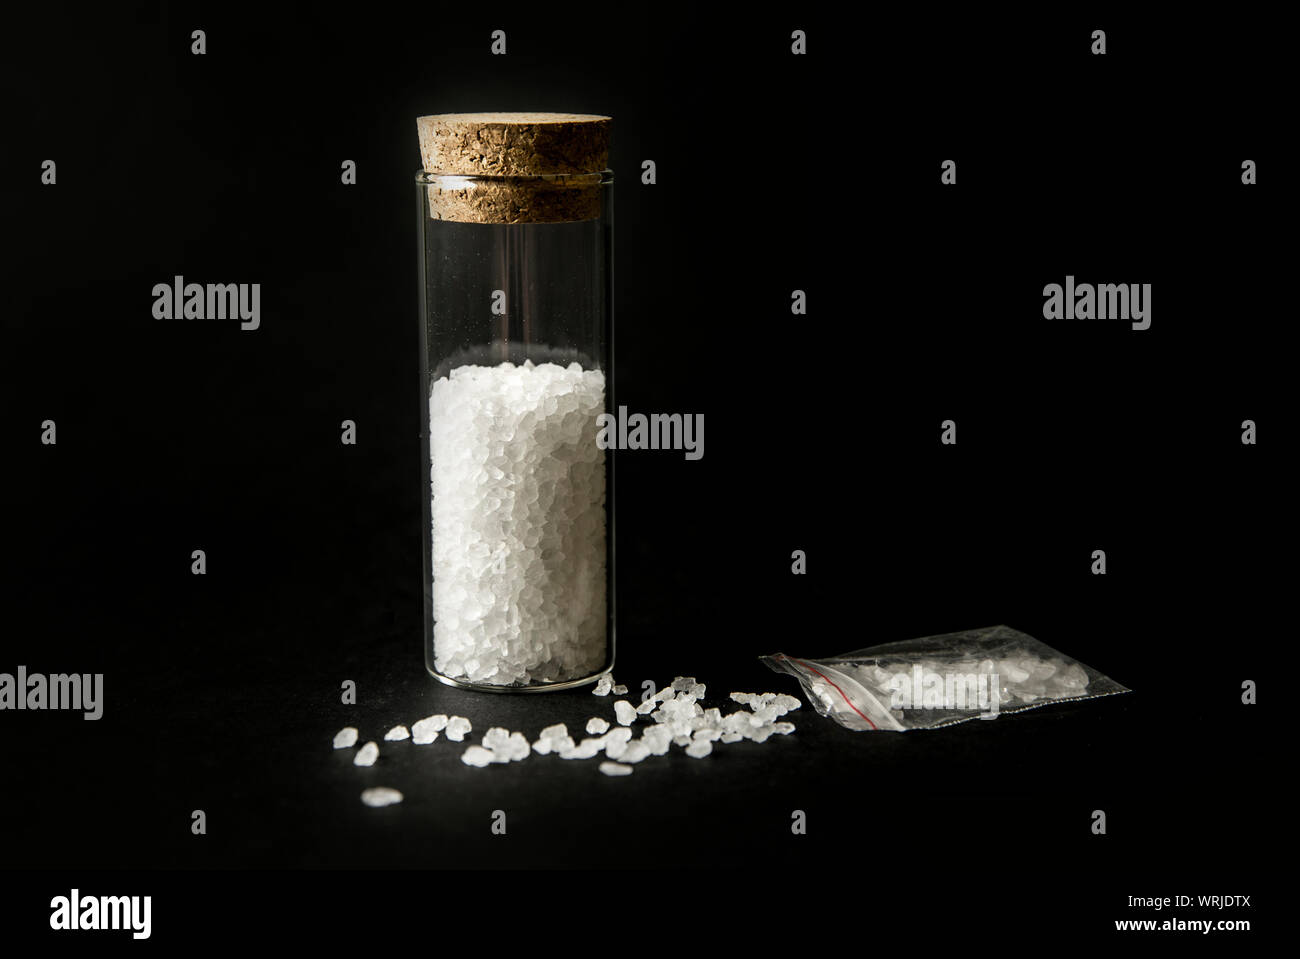 Immagine concettuale di 'i sali da bagno' droghe stupefacenti concetto. Polvere bianca cristallina su sfondo nero(), assomigliano a bagno di sale da bagno. Foto Stock